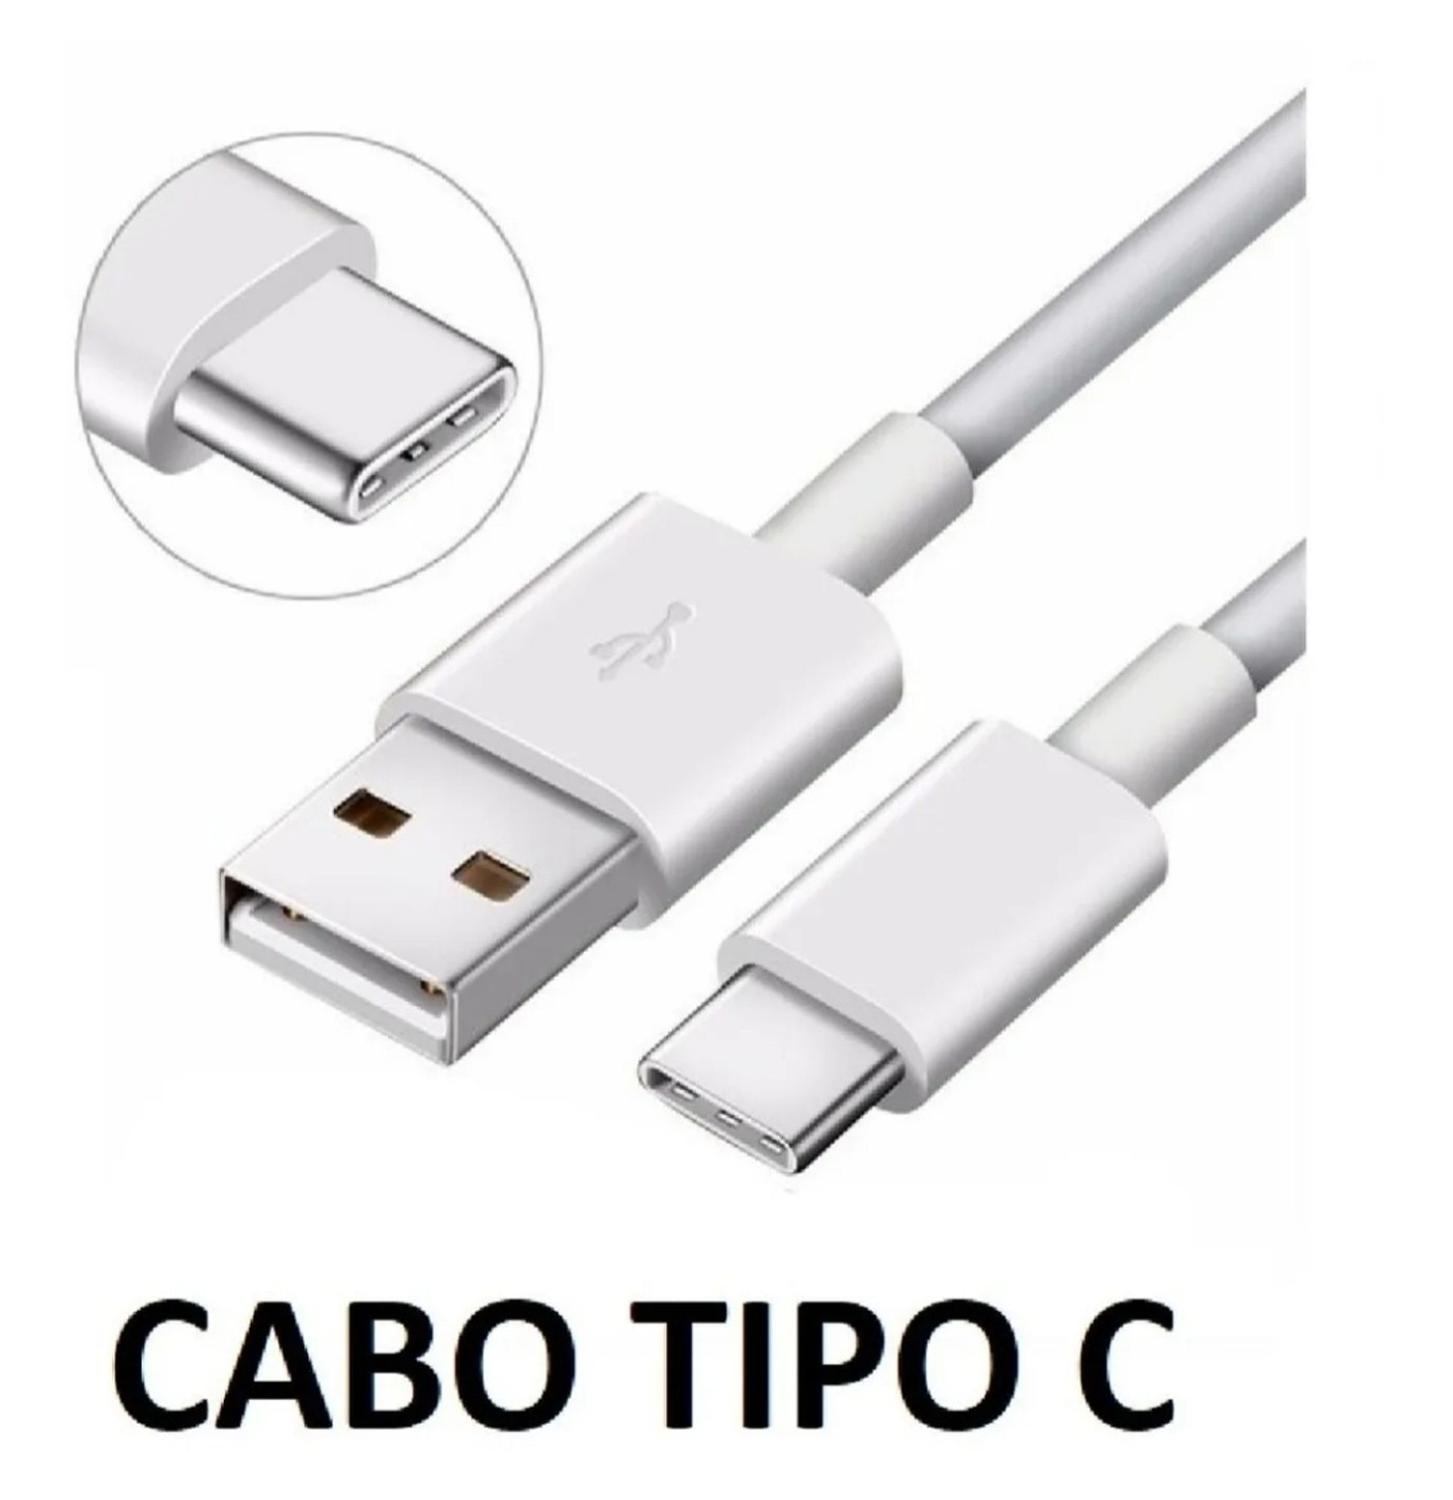 Cabo USB Tipo C Kaidi 1 Metro